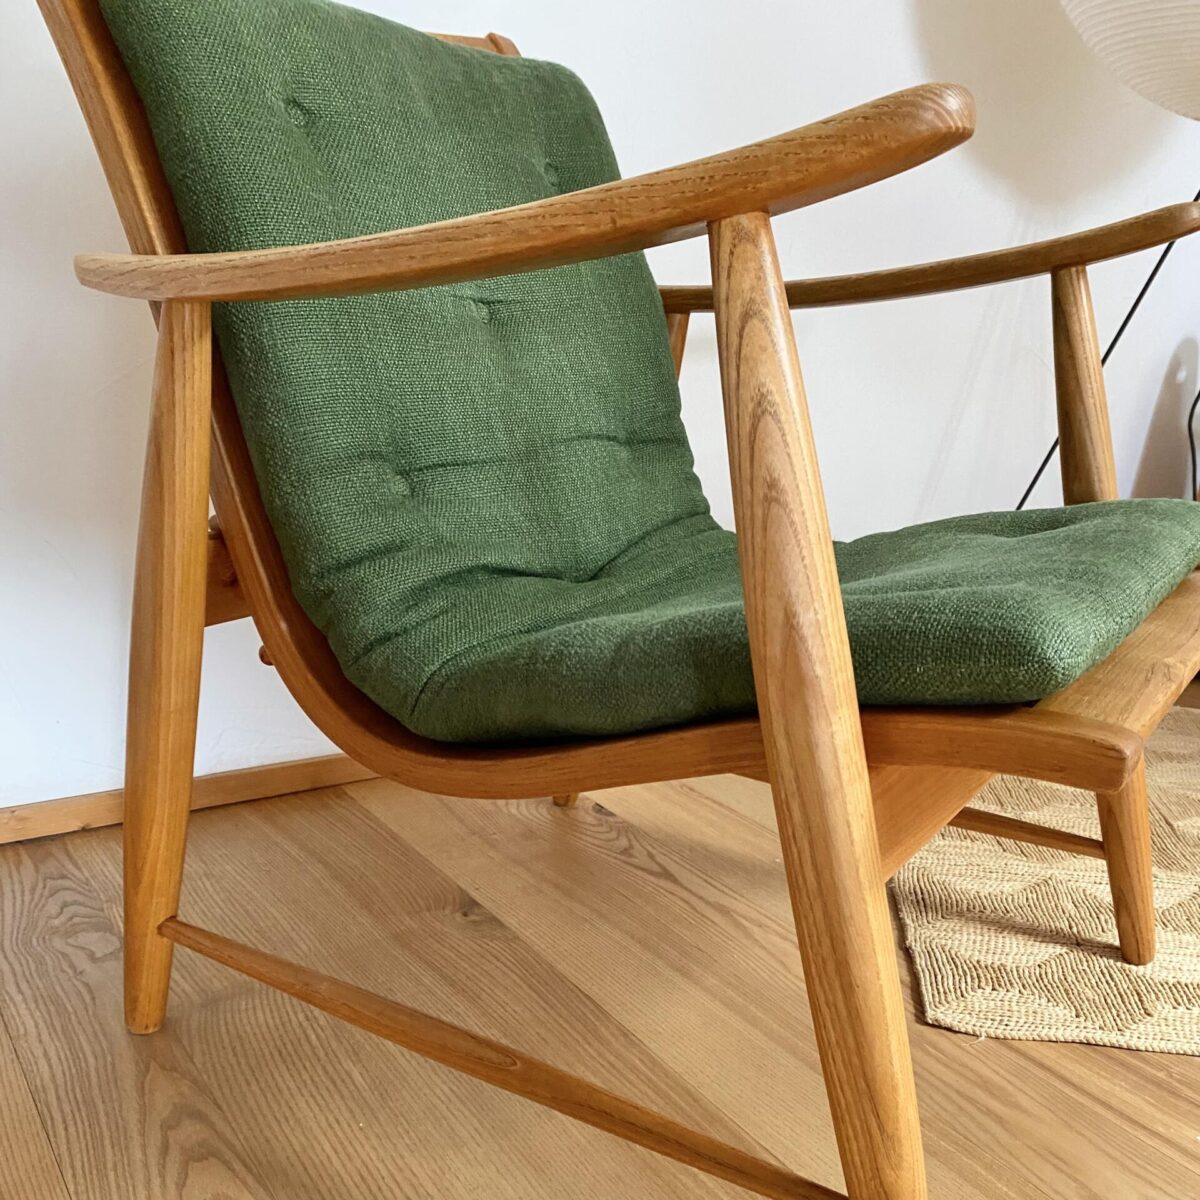 Deuxieme.shop Jacob Müller „Ronco“ Sessel aus den 50er Jahren, hergestellt von der Werkgenossenschaft Wohnhilfe. Jacob Müller „Ronco“ Sessel aus den 50er Jahren, hergestellt von der Werkgenossenschaft Wohnhilfe. Swissdesign Masterpiece Designklassiker.